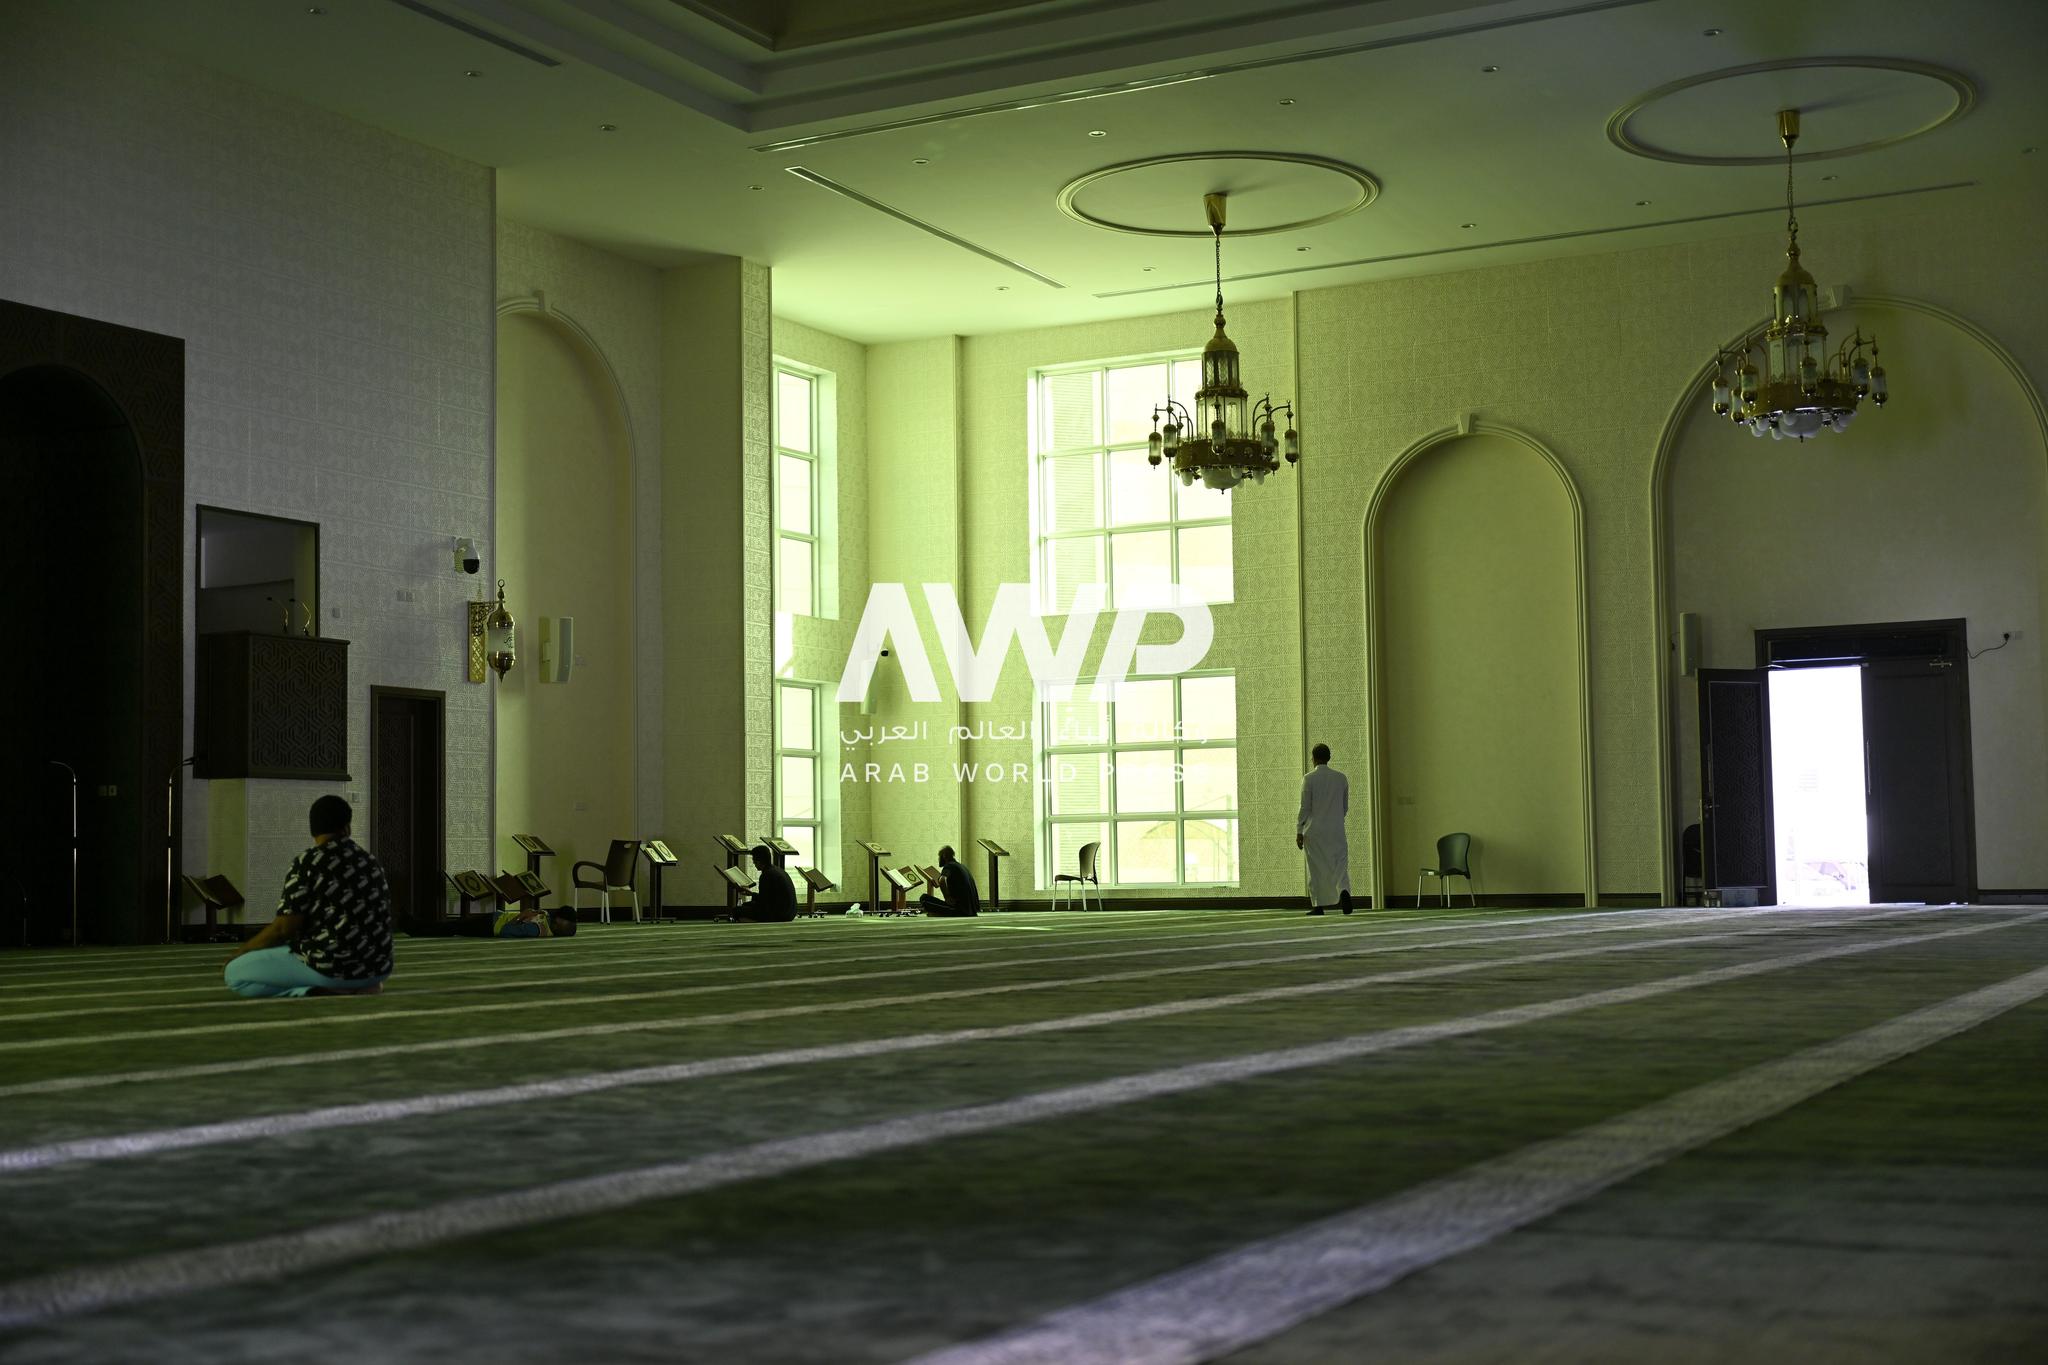 مصلون يأدون صلاتهم في "جامع المرحوم عبد العزيز عبد الله شربتلي" في مدينة جدة والذي يعد أول مسجد يُبنى بتقنية الطباعة ثلاثية الأبعاد في العالم. وأُنشئ الجامع الجديد بمبادرة من سيدة الأعمال السعودية وجنات محمد عبد الواحد